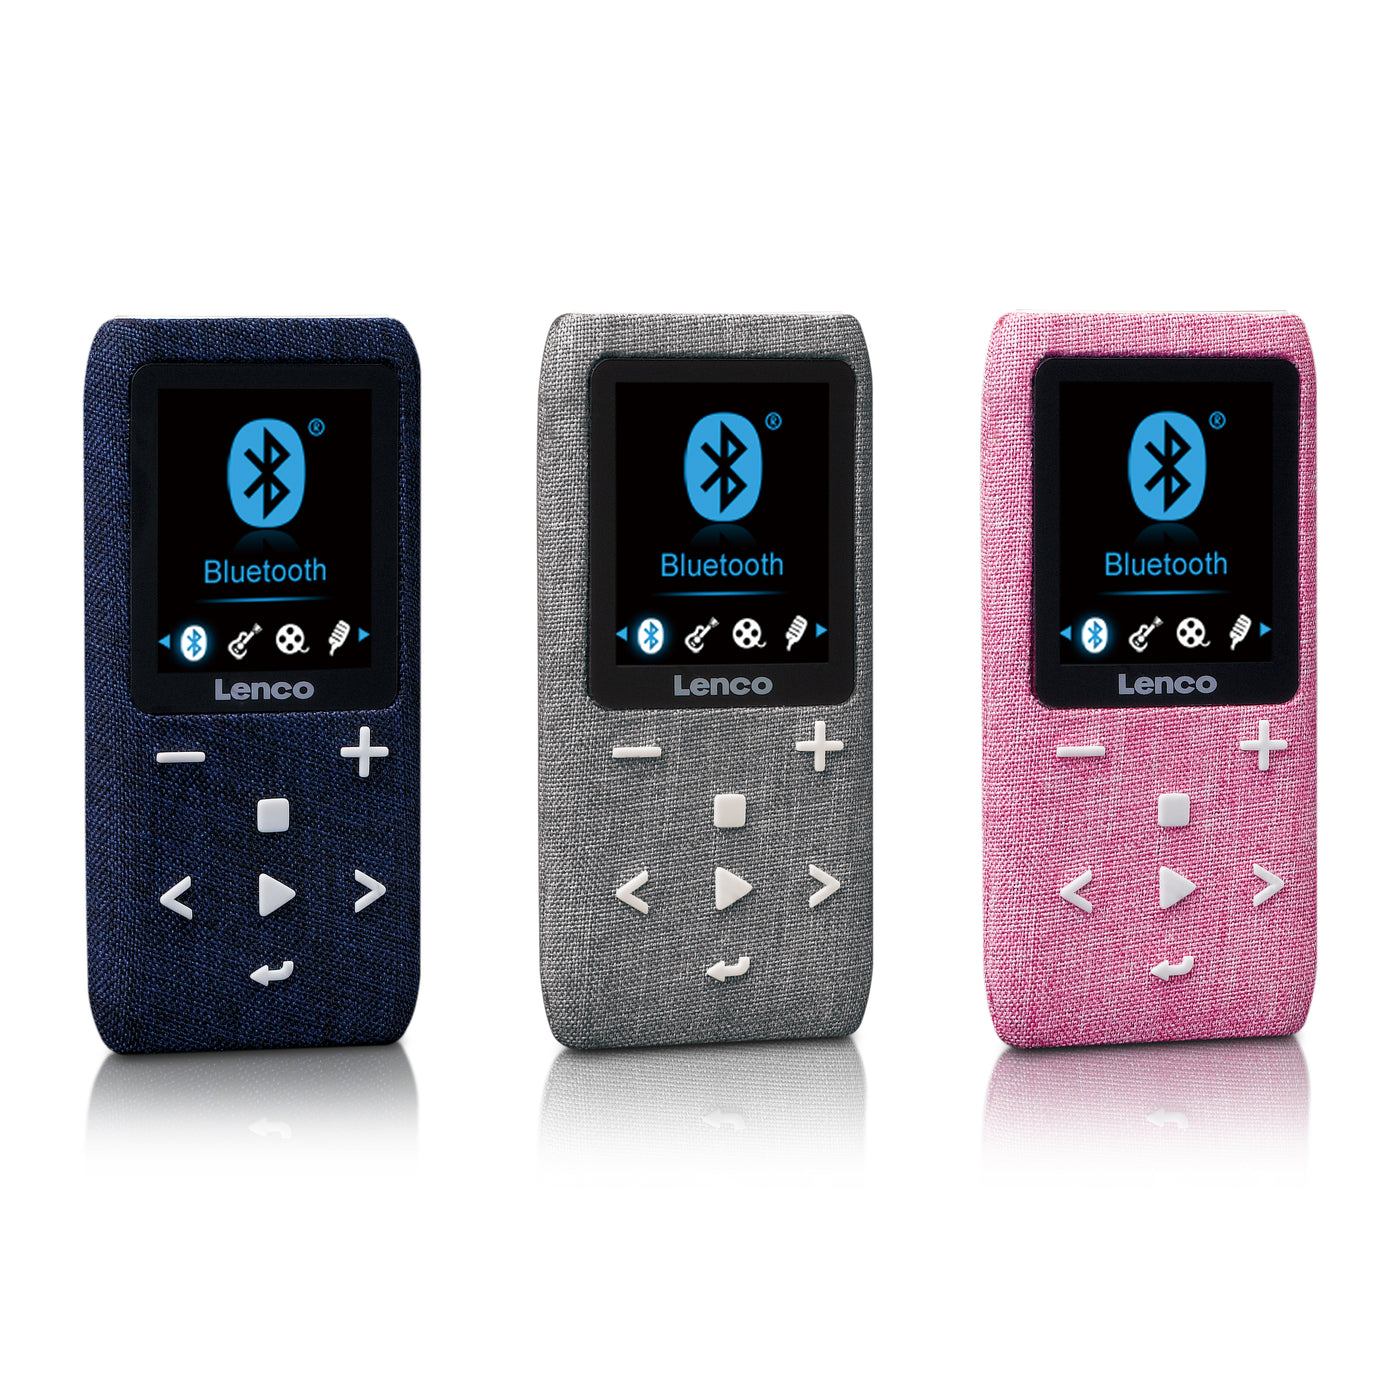 Lenco Xemio-861GY - Lecteur MP3/MP4 avec Bluetooth® et carte micro SD de 8 Go - Gris